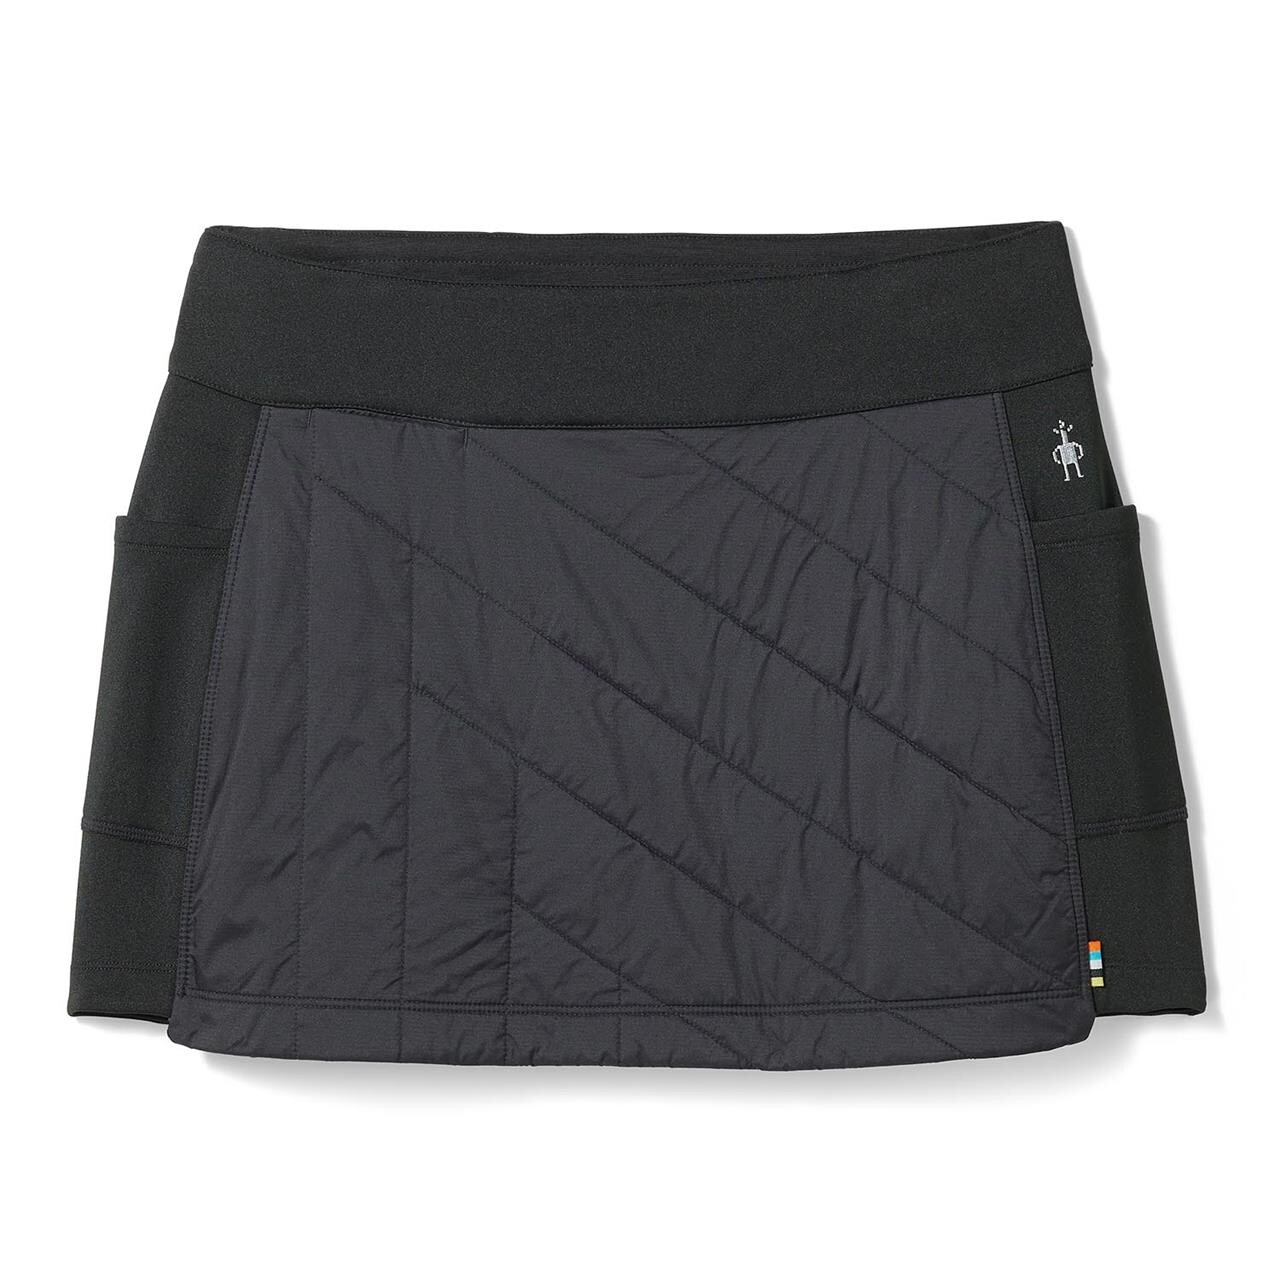 Billede af Smartwool Womens Smartloft Skirt (Sort (BLACK) Large)